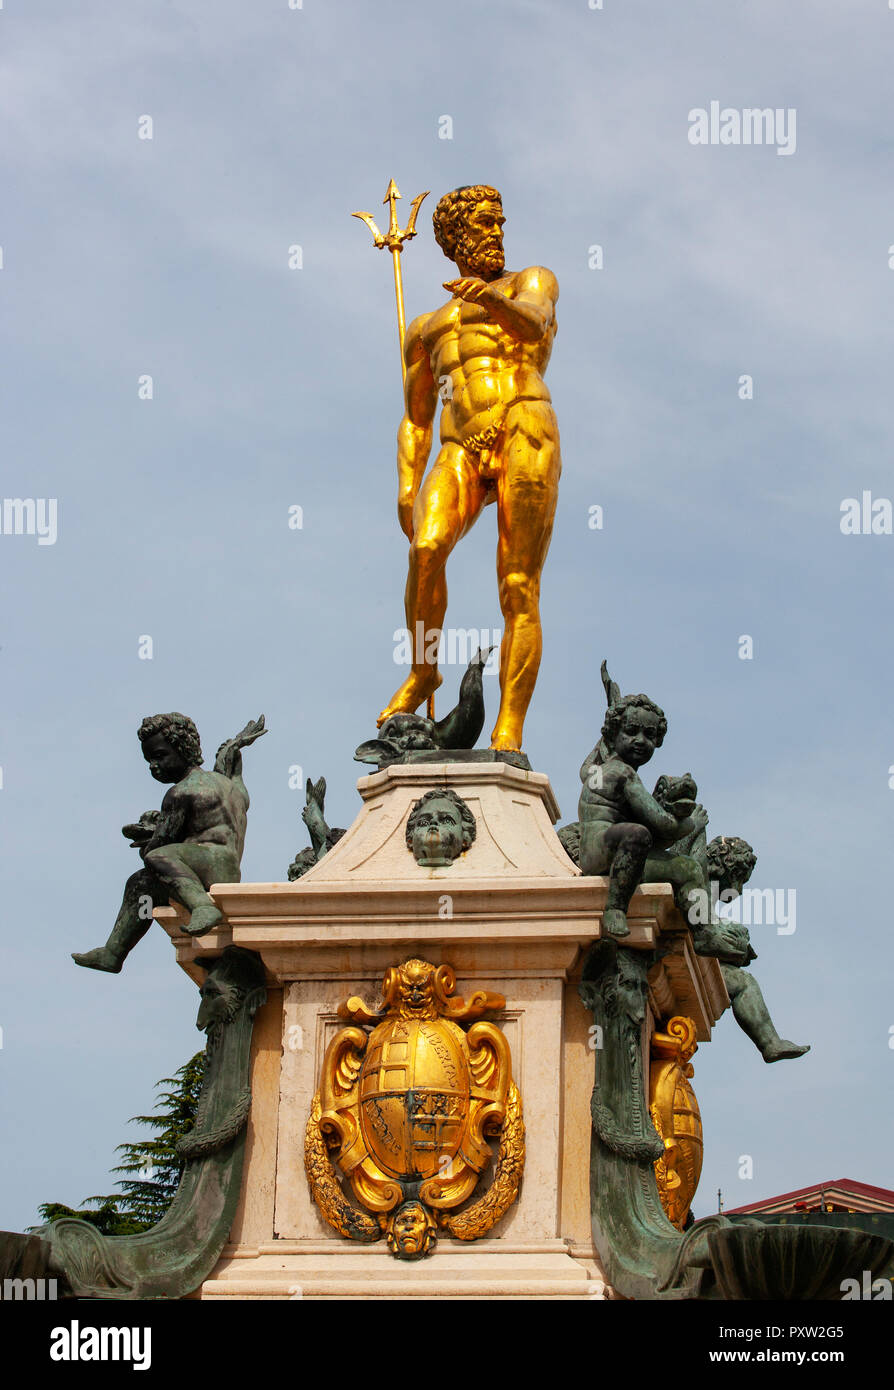 Georgia, Adjara, Batumi, Golden sculpture on the Neptune fountain Stock Photo